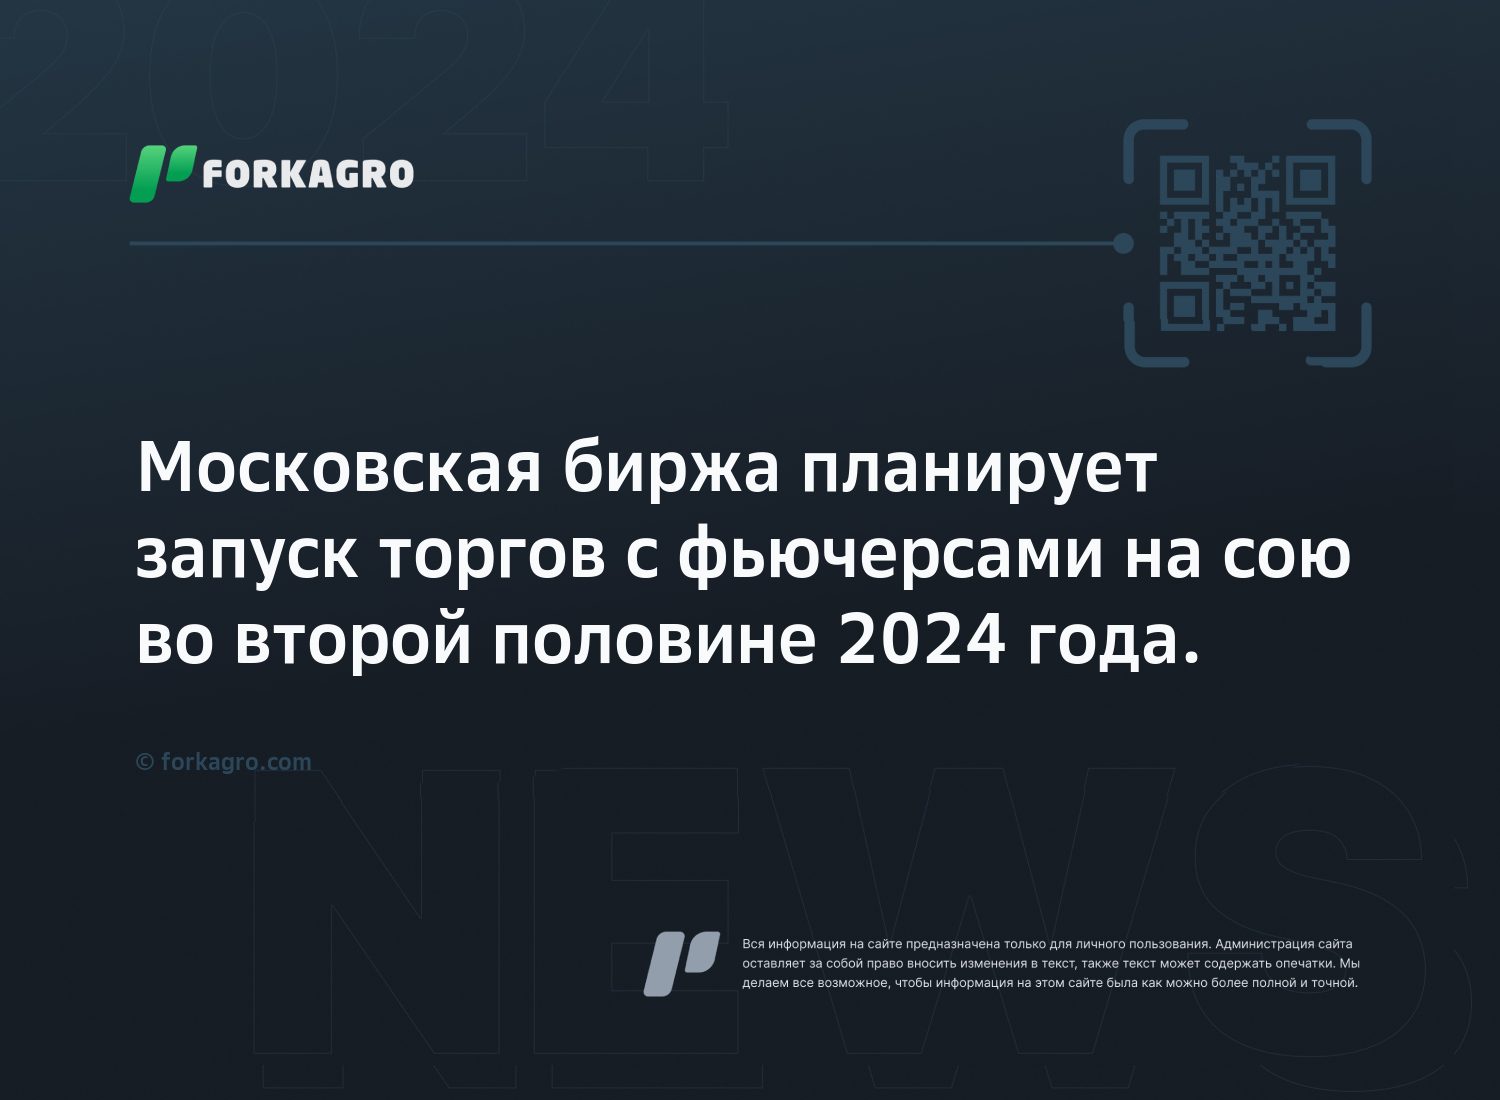 Московская биржа планирует запуск торгов с фьючерсами на сою во второй половине 2024 года.